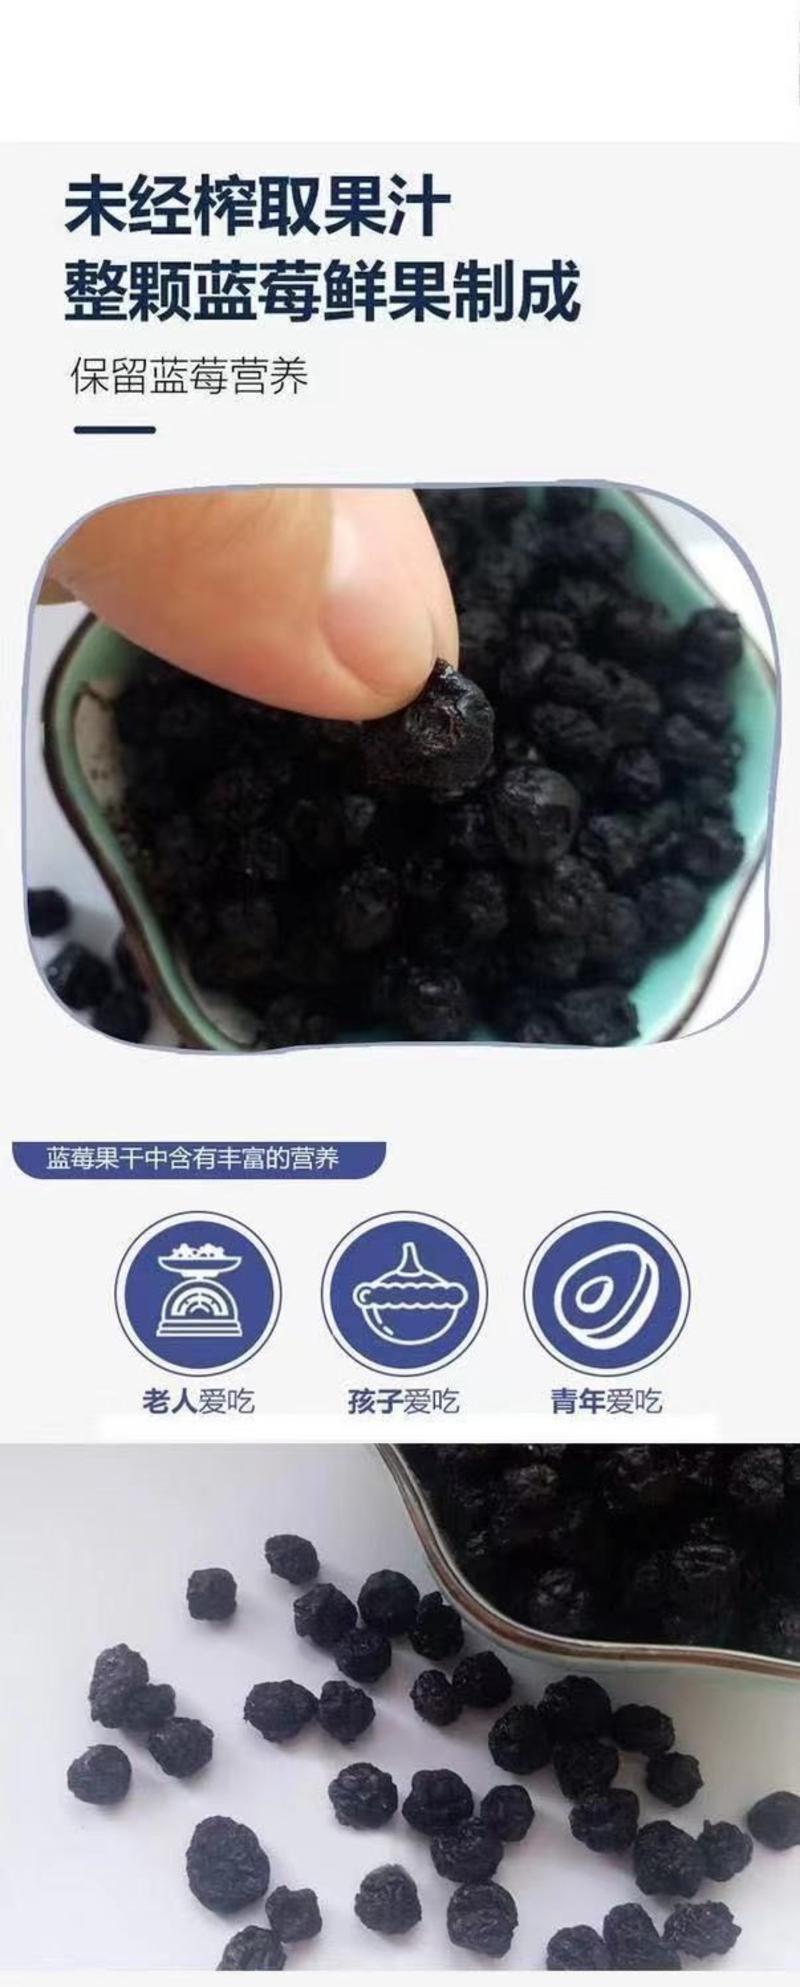 【大颗粒】野生蓝莓干独立小包装食品批发东北特产老少皆宜零